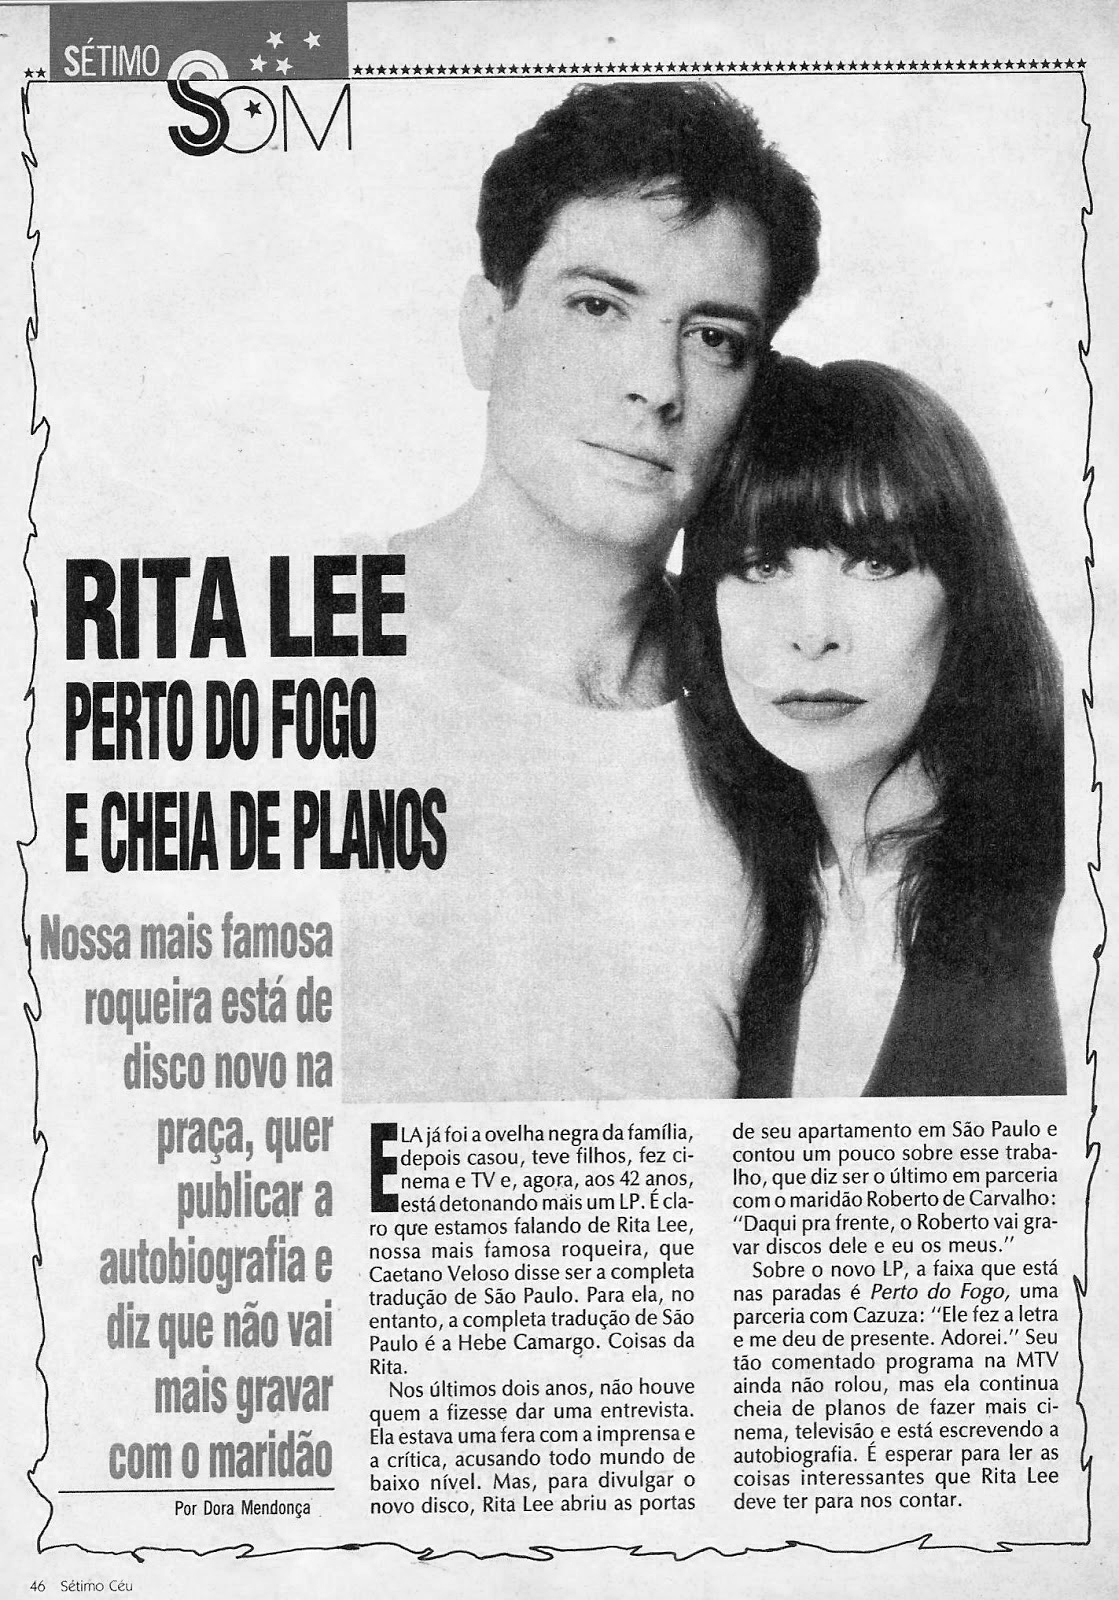 RITA LEE A RAINHA DO ROCK: RITA LEE - PERTO DO FOGO (1991)